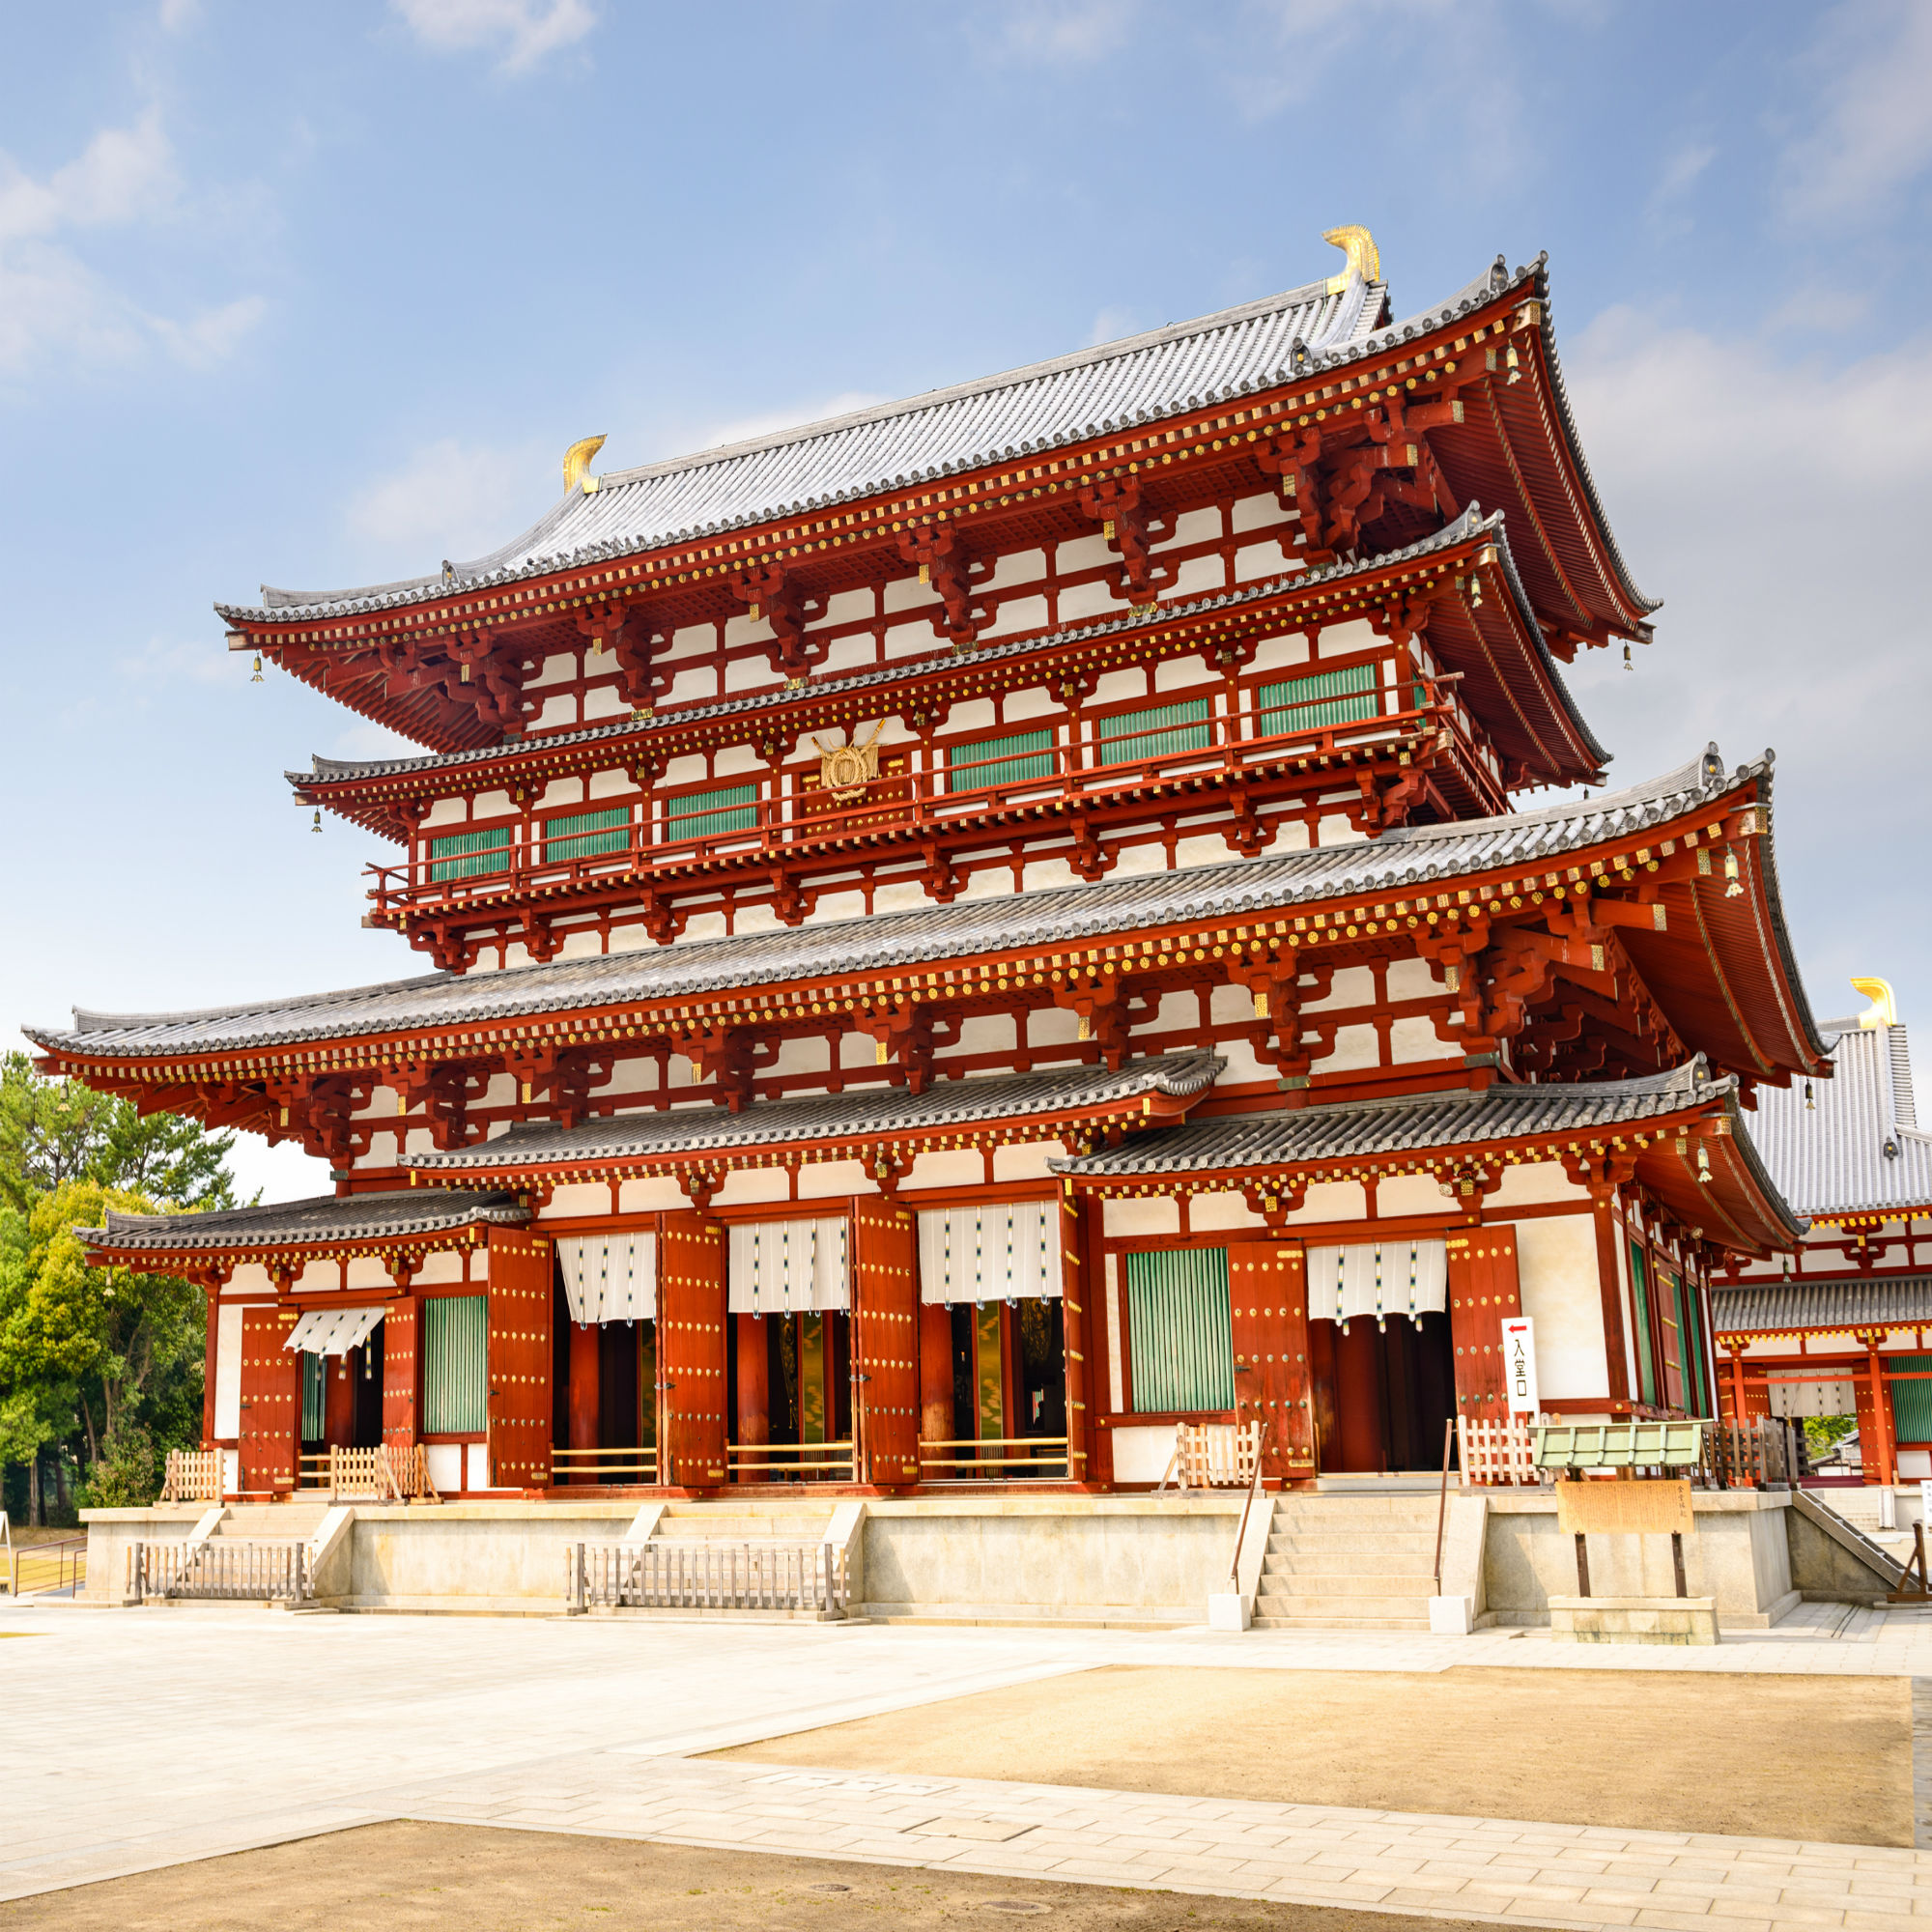 「古都奈良の文化財」の1つとして世界遺産に登録されている「薬師寺」